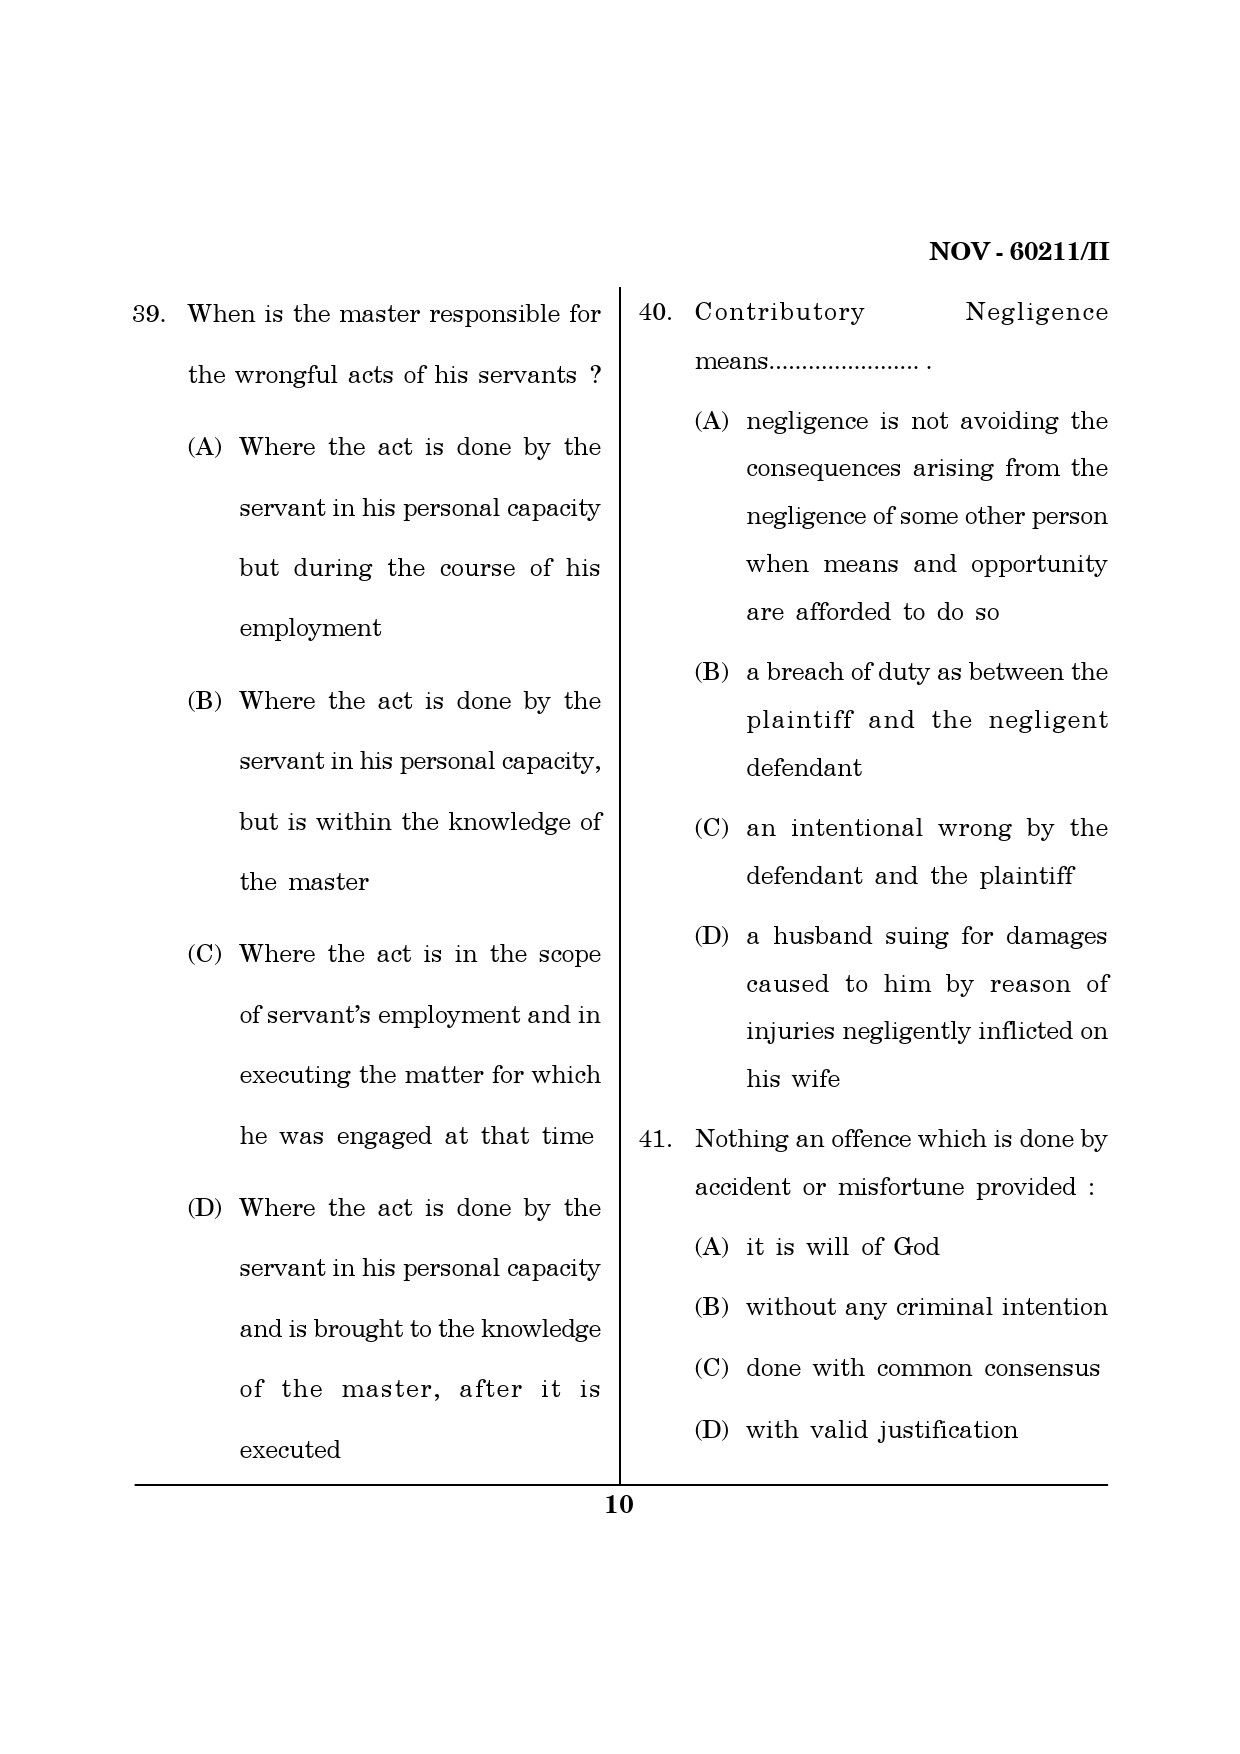 Maharashtra SET Law Question Paper II November 2011 10